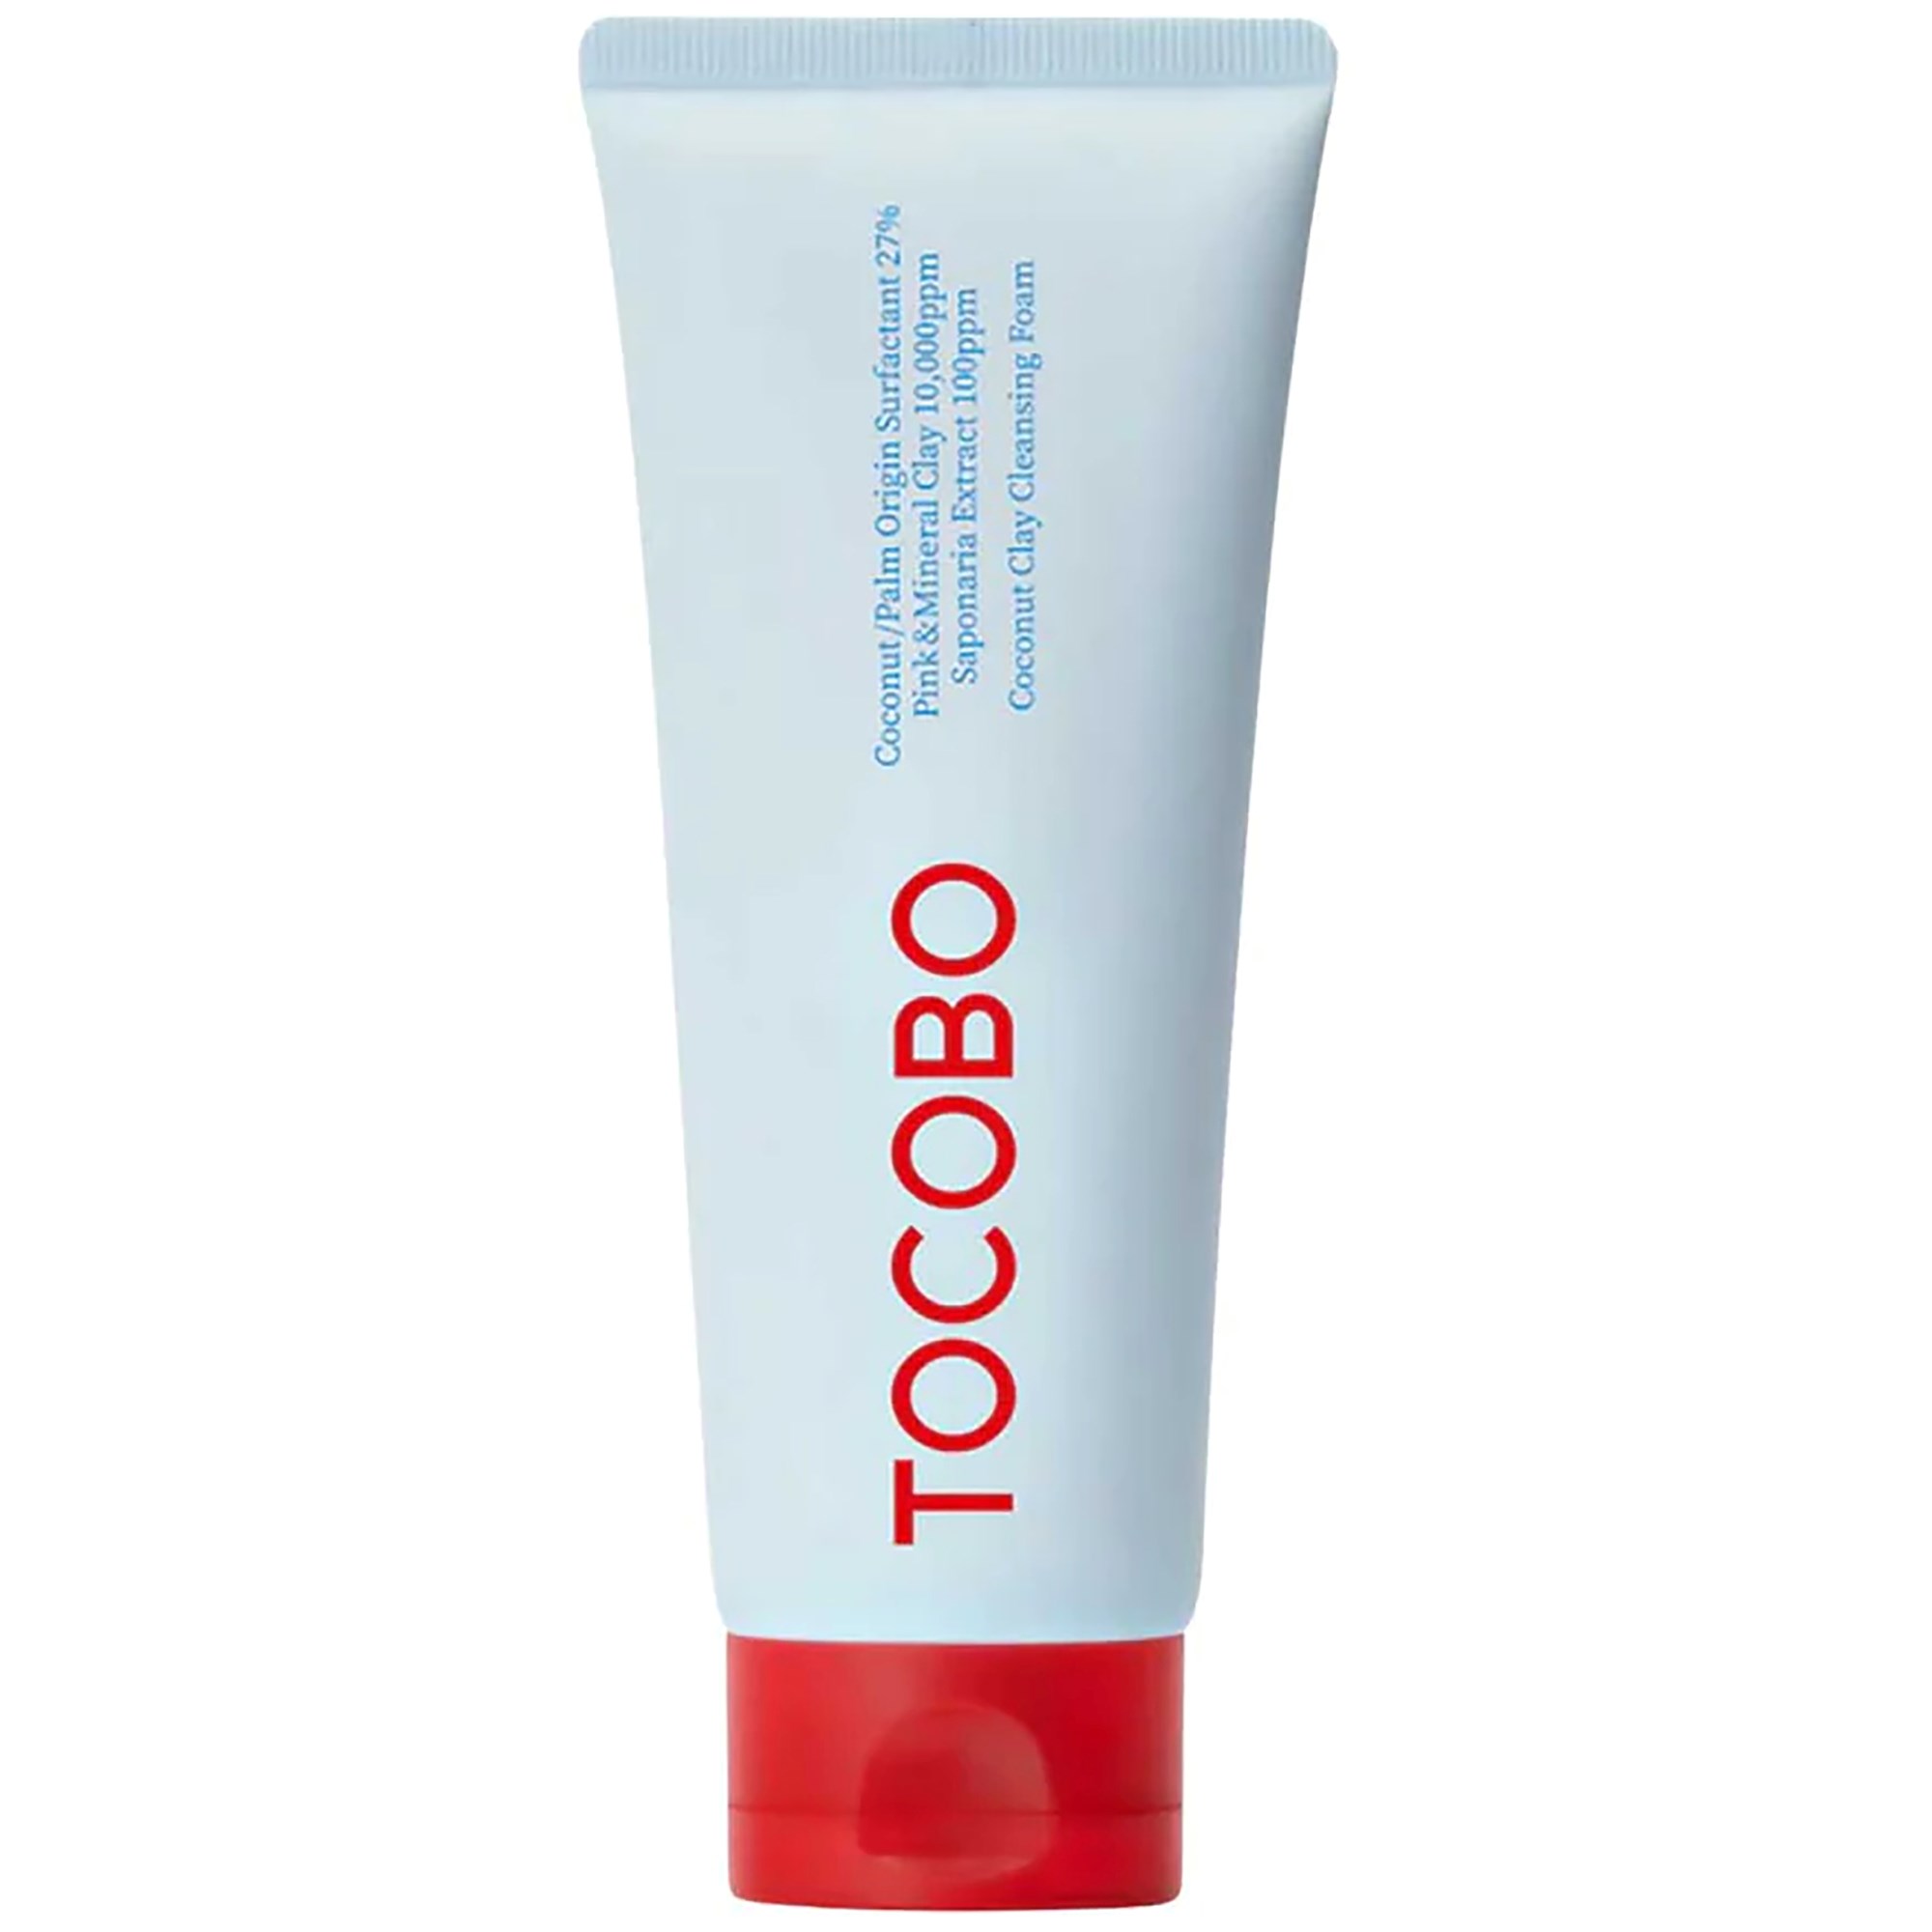 Фото - Засіб для очищення обличчя і тіла Tocobo Coconut Clay Cleansing Foam 150 ml 